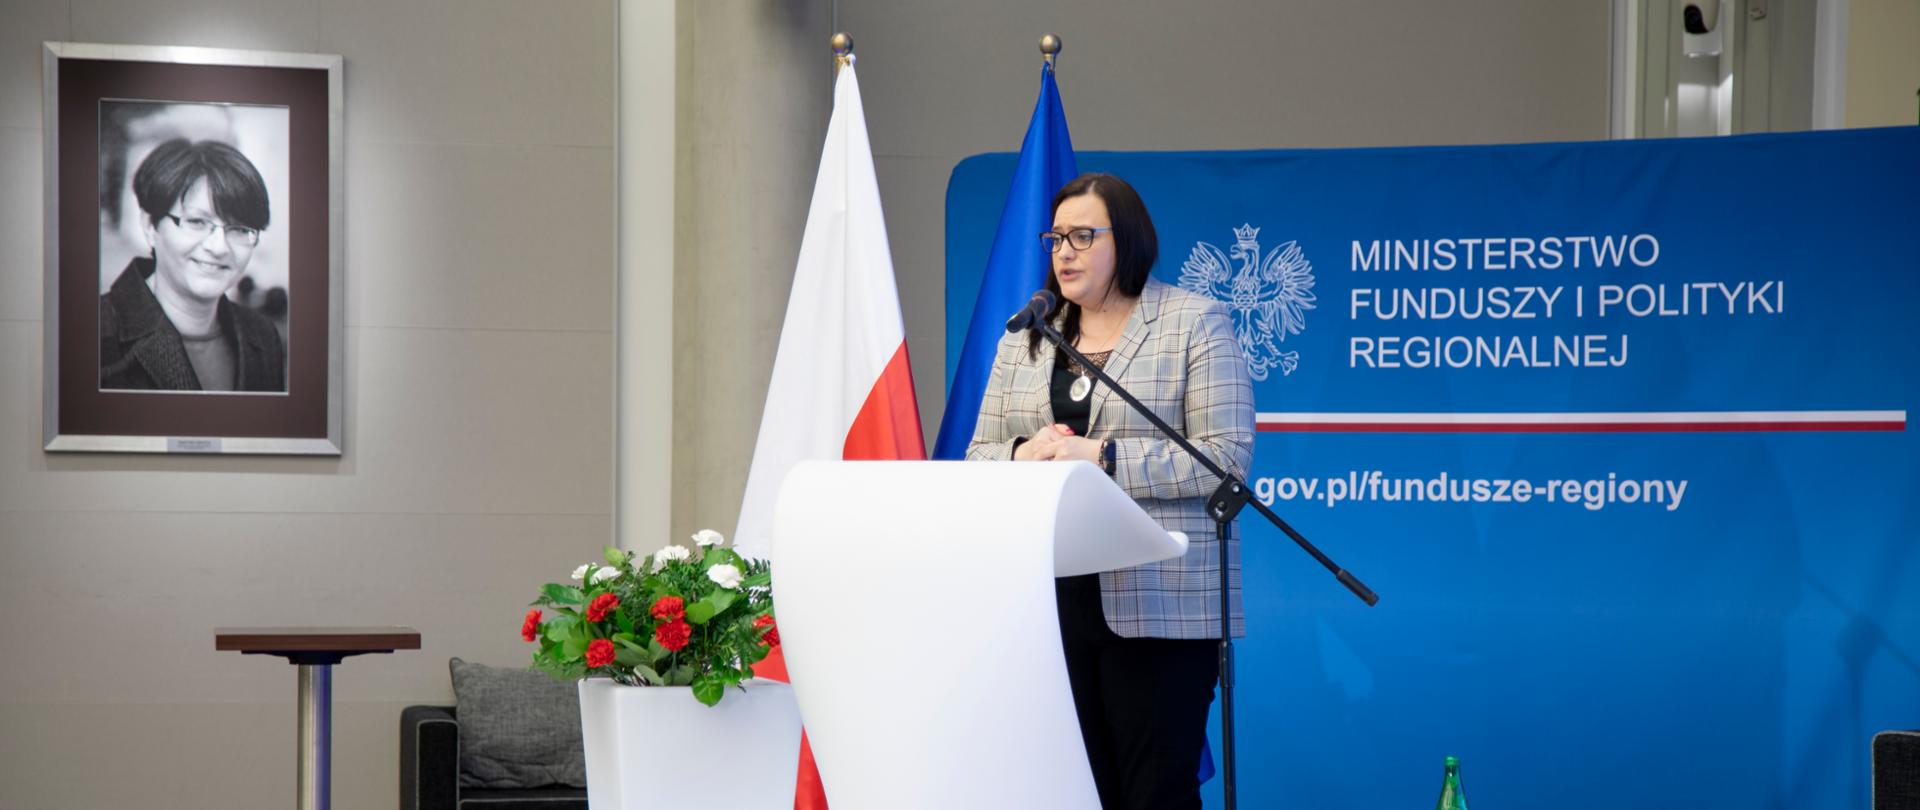 wiceminister Małgorzata Jarosińska-Jedynak mówi do mikrofonu, za nią zdjęcie minister Grażyny Gęsickiej